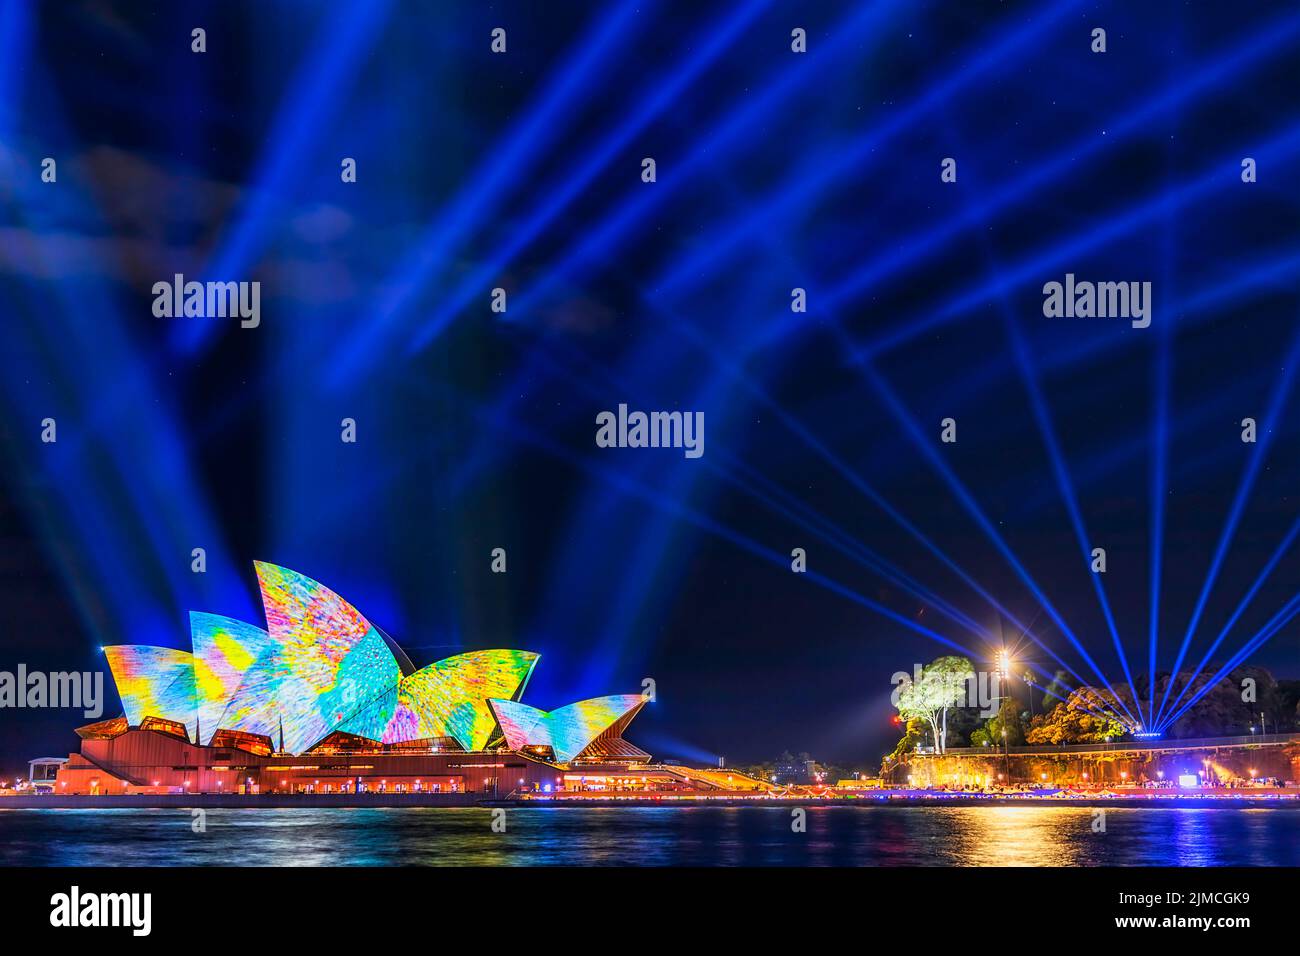 Sydney, Australie - 1 juin 2022 : opéra de Sydney sous des faisceaux laser bleus avec des images projetées et des traces de lumière pendant le spectacle lumineux de Vivid Sydney Banque D'Images